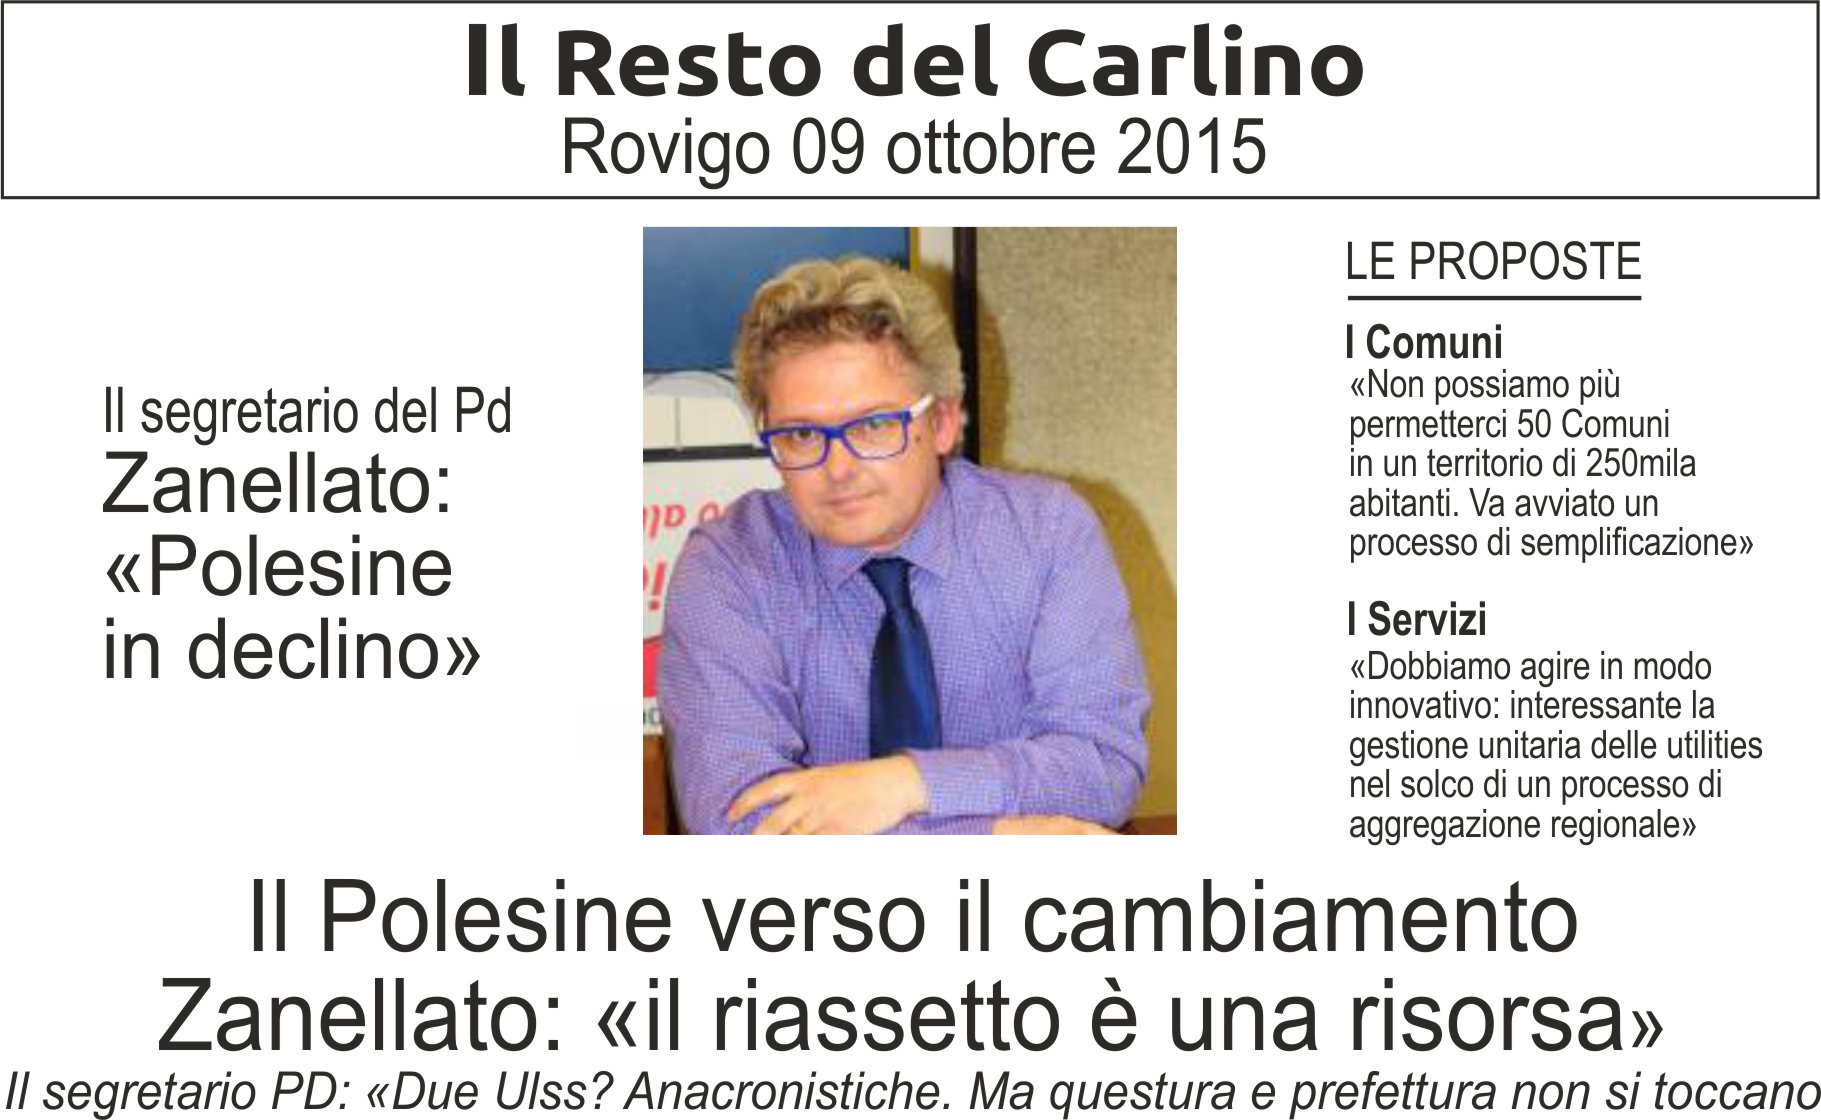 Al momento stai visualizzando Il segretario del Pd Zanellato: «Polesine in declino» = Il Polesine verso il cambiamento «Il riassetto è una risorsa»